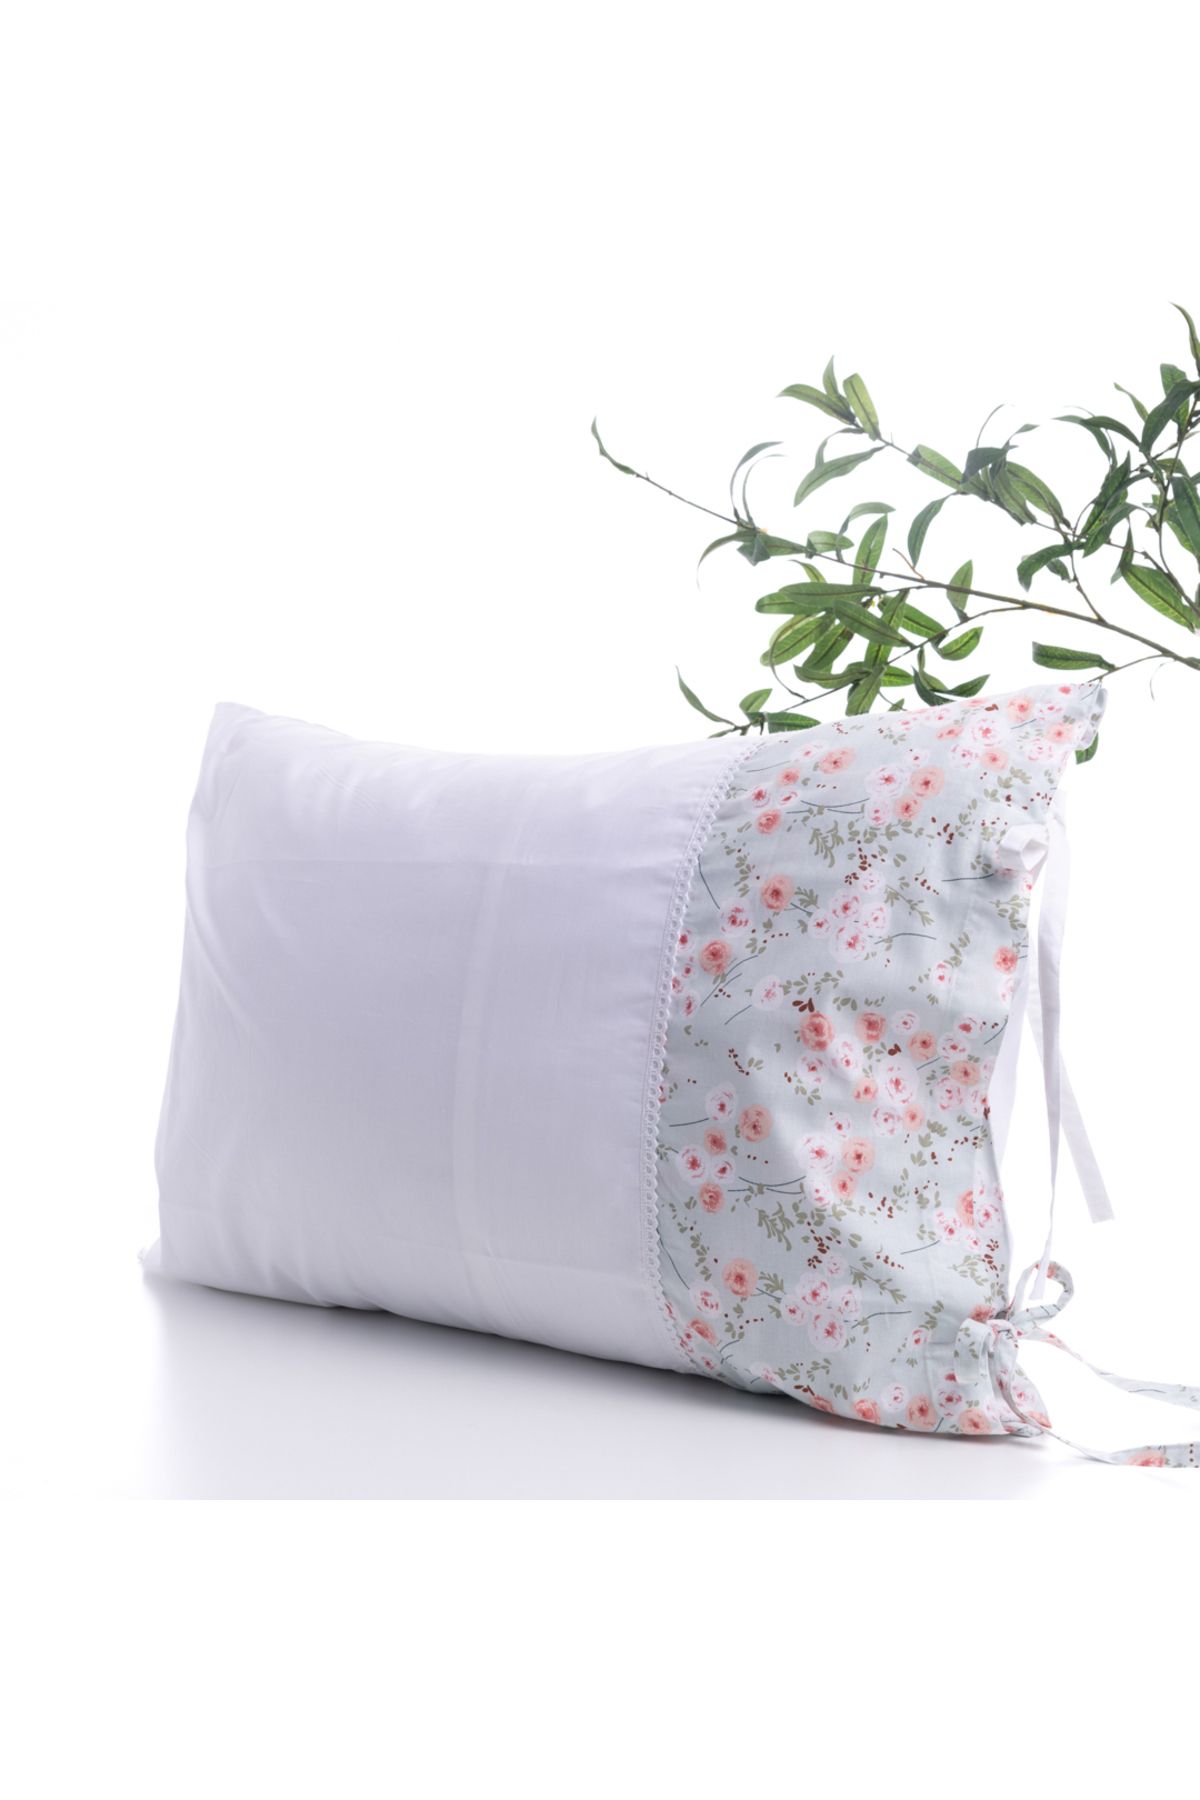 Bimotif Çiçek desenli yastık kılıfı, 50x70 cm, Açık Mavi